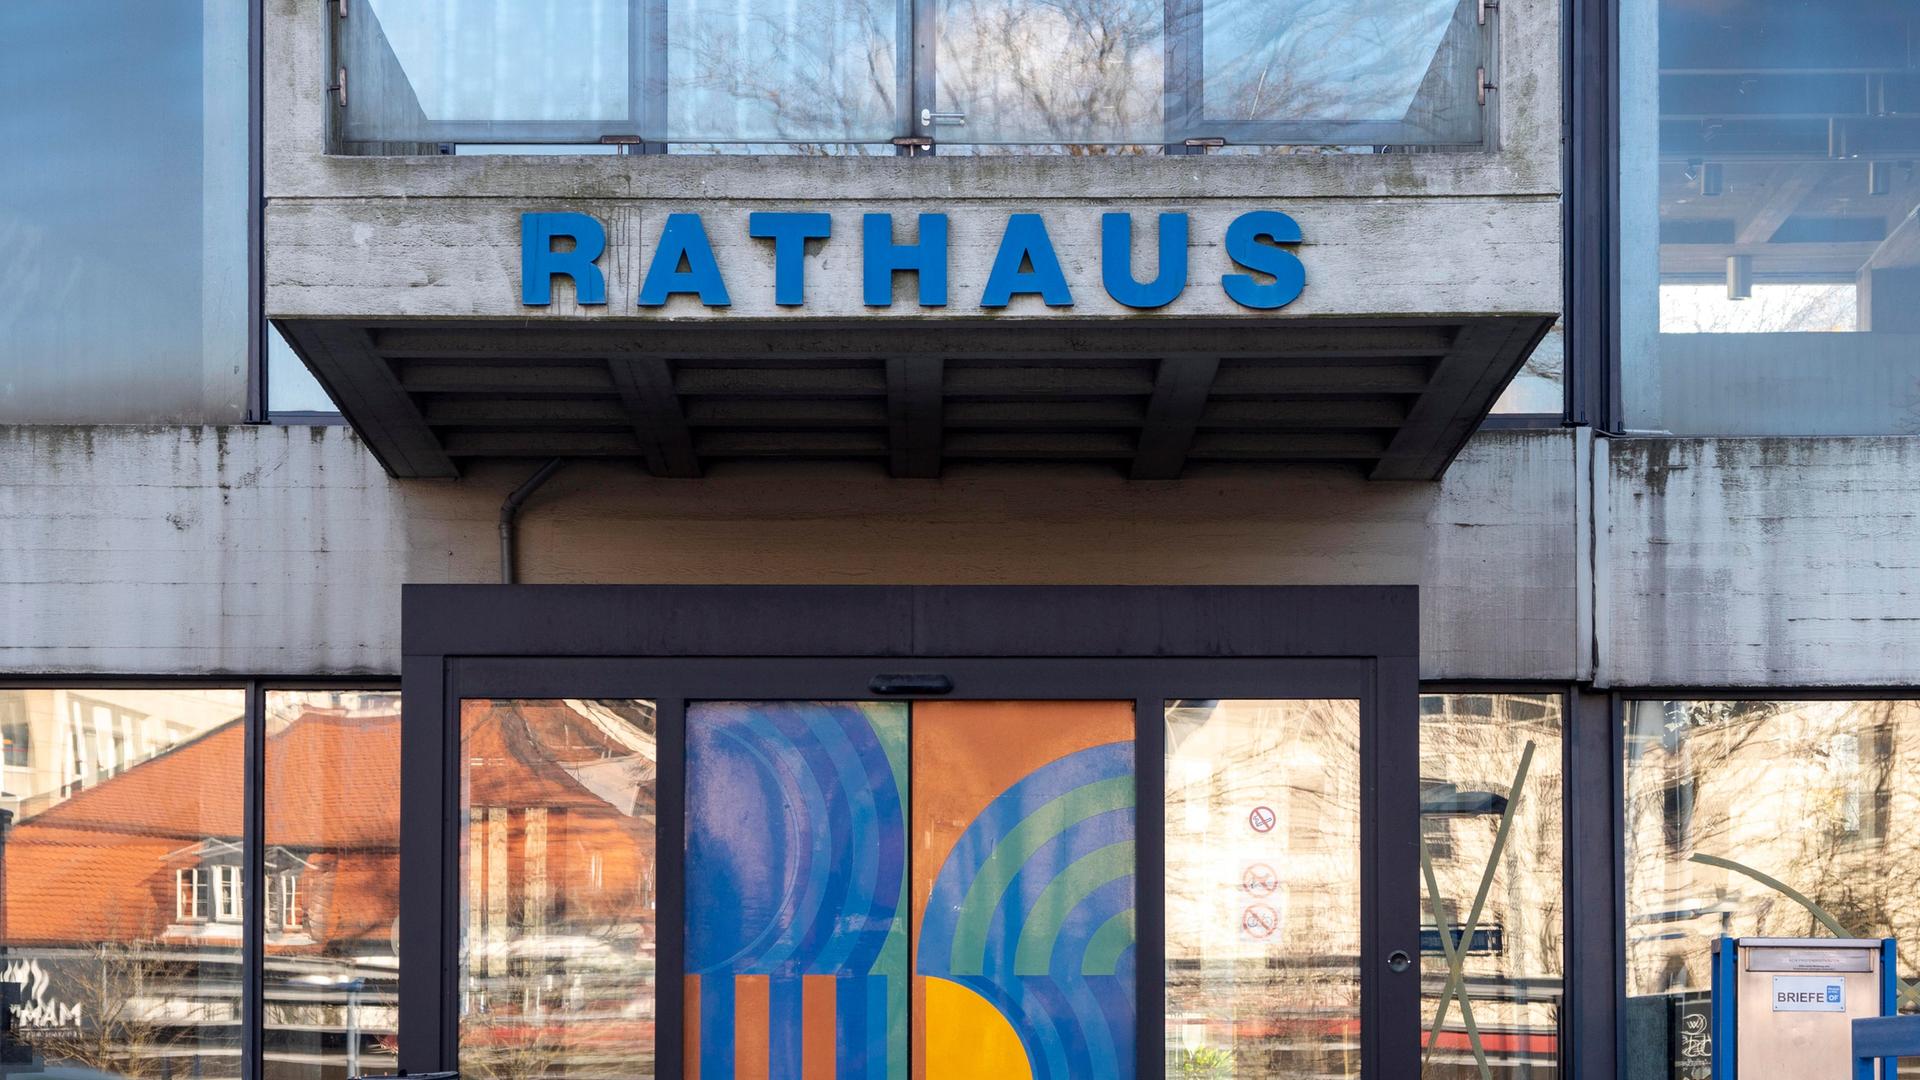 Der Eingang zum Rathaus von Offenbach am Main. Es handelt sich um ein brutalistisches Gebäude aus Beton und Glas mit blauen Ornamenten auf der Eingangstür.